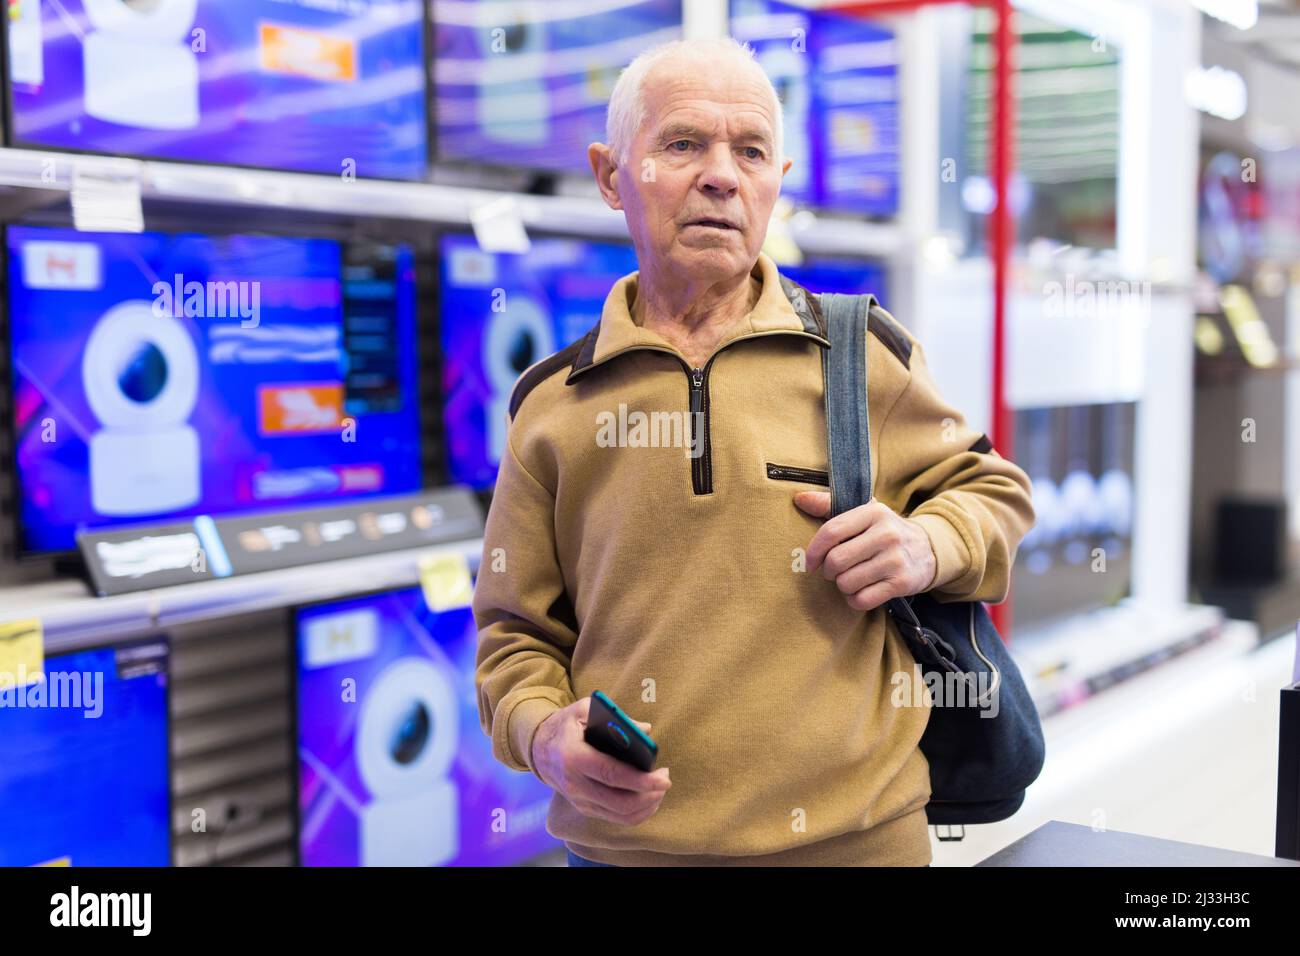 senor homme retraité achetant télévision numérique moderne avec smart tv dans la salle d'exposition de la boutique de produits électroniques numériques Banque D'Images